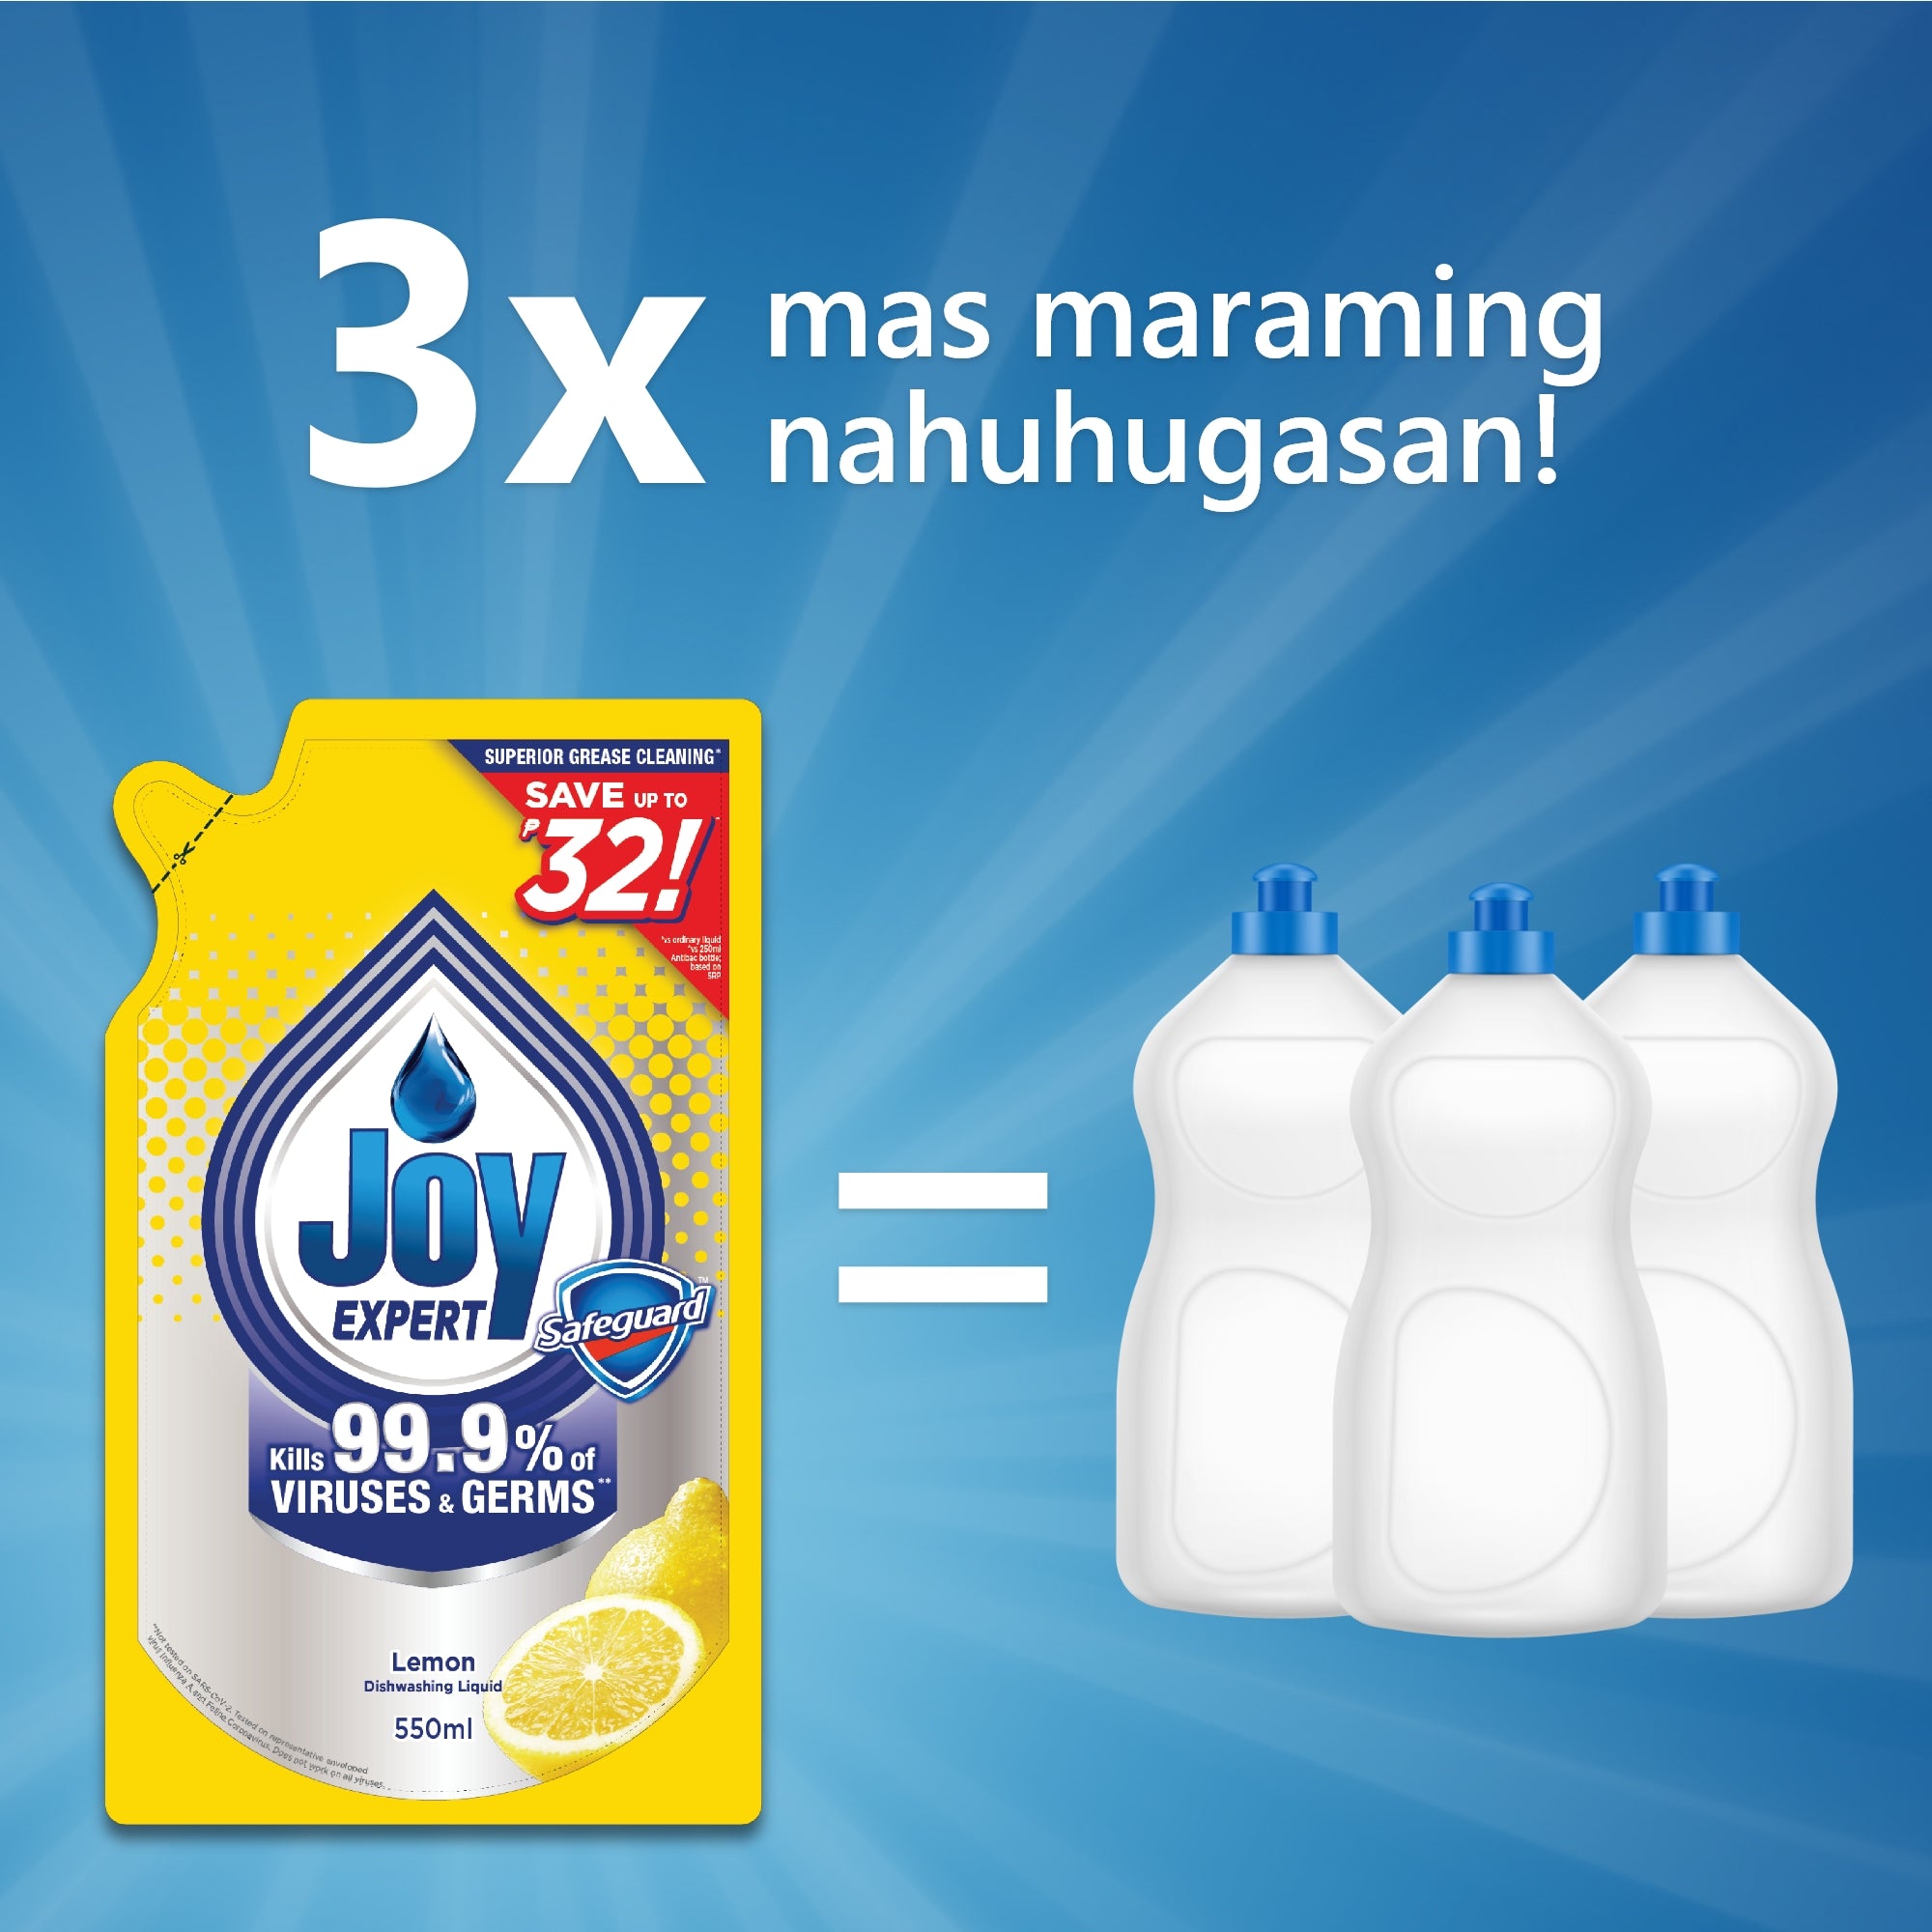 Joy Expert Lemon Dishwashing Liquid 550ml x 2 Refill (Dishwashing Liquid)